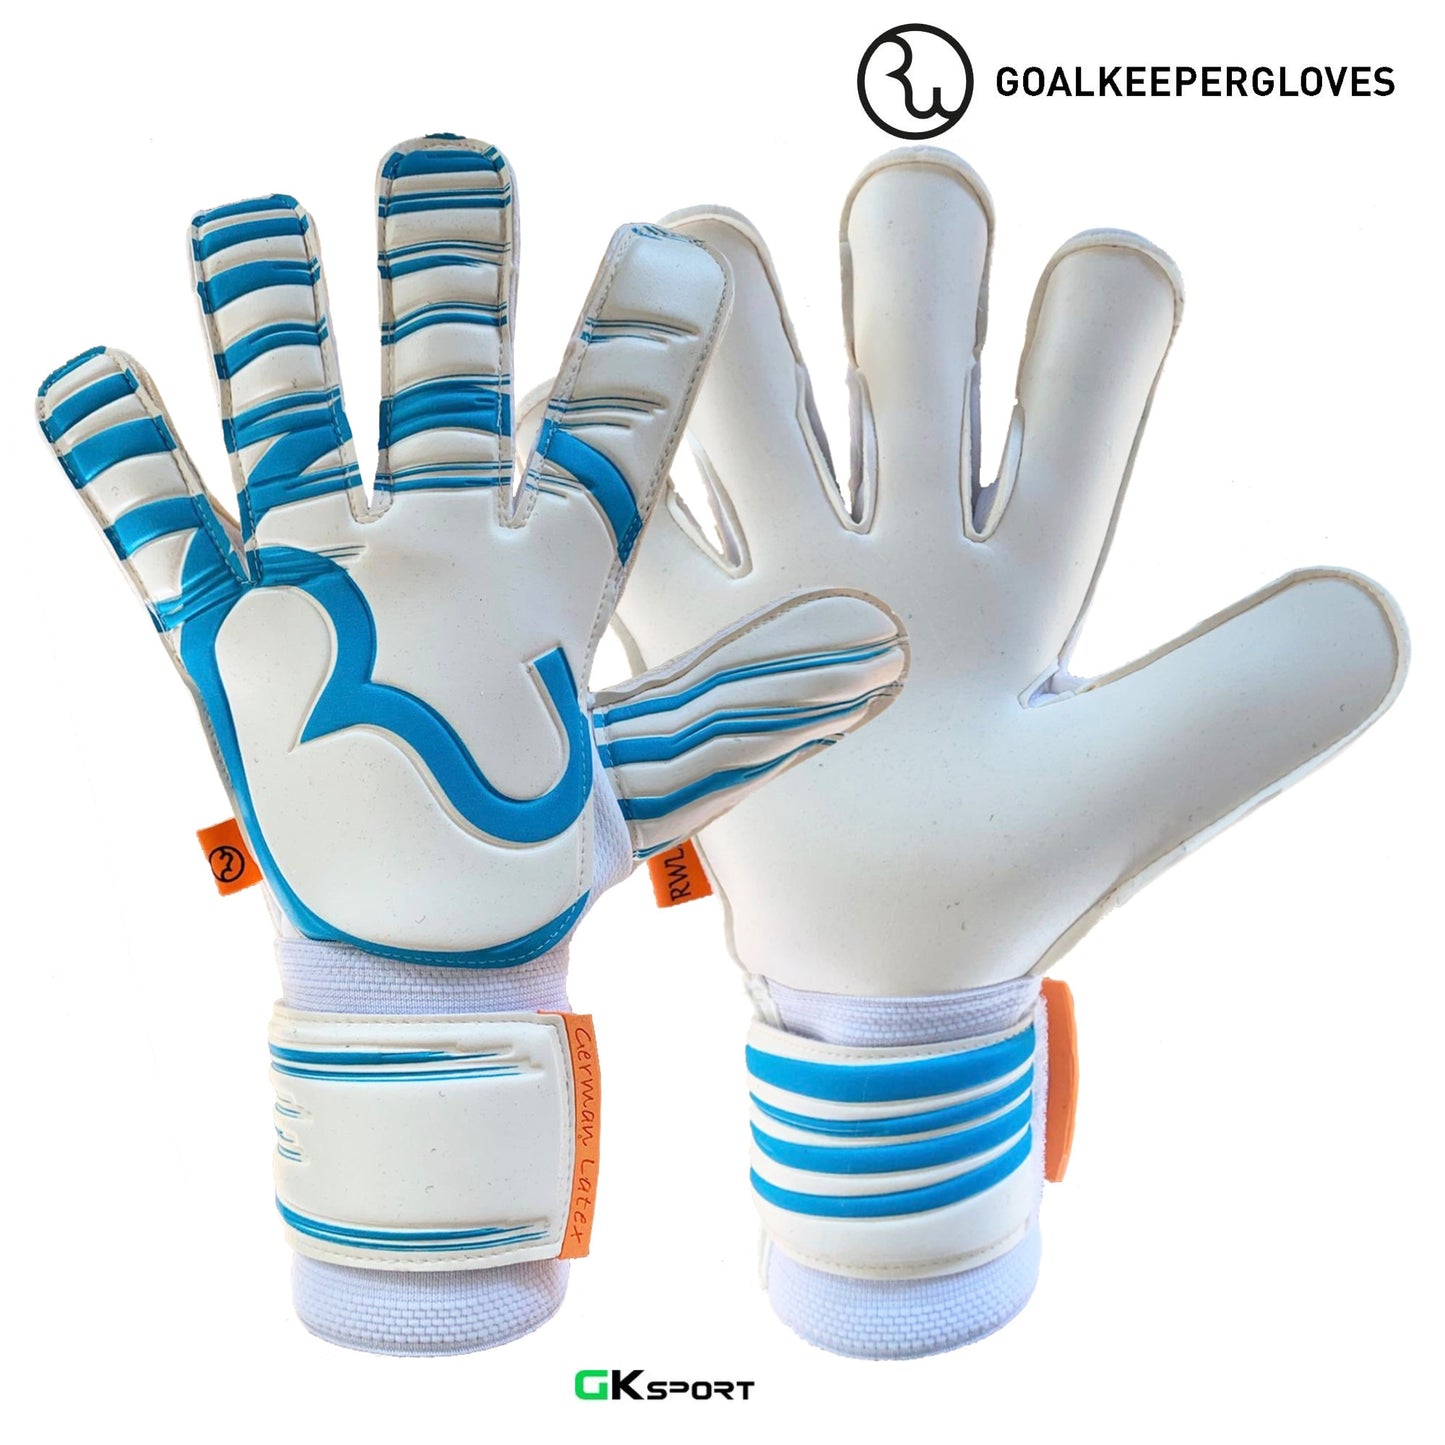 RWLK PRO LINE WHITE/LIGHT BLUE Goalkeeper Gloves